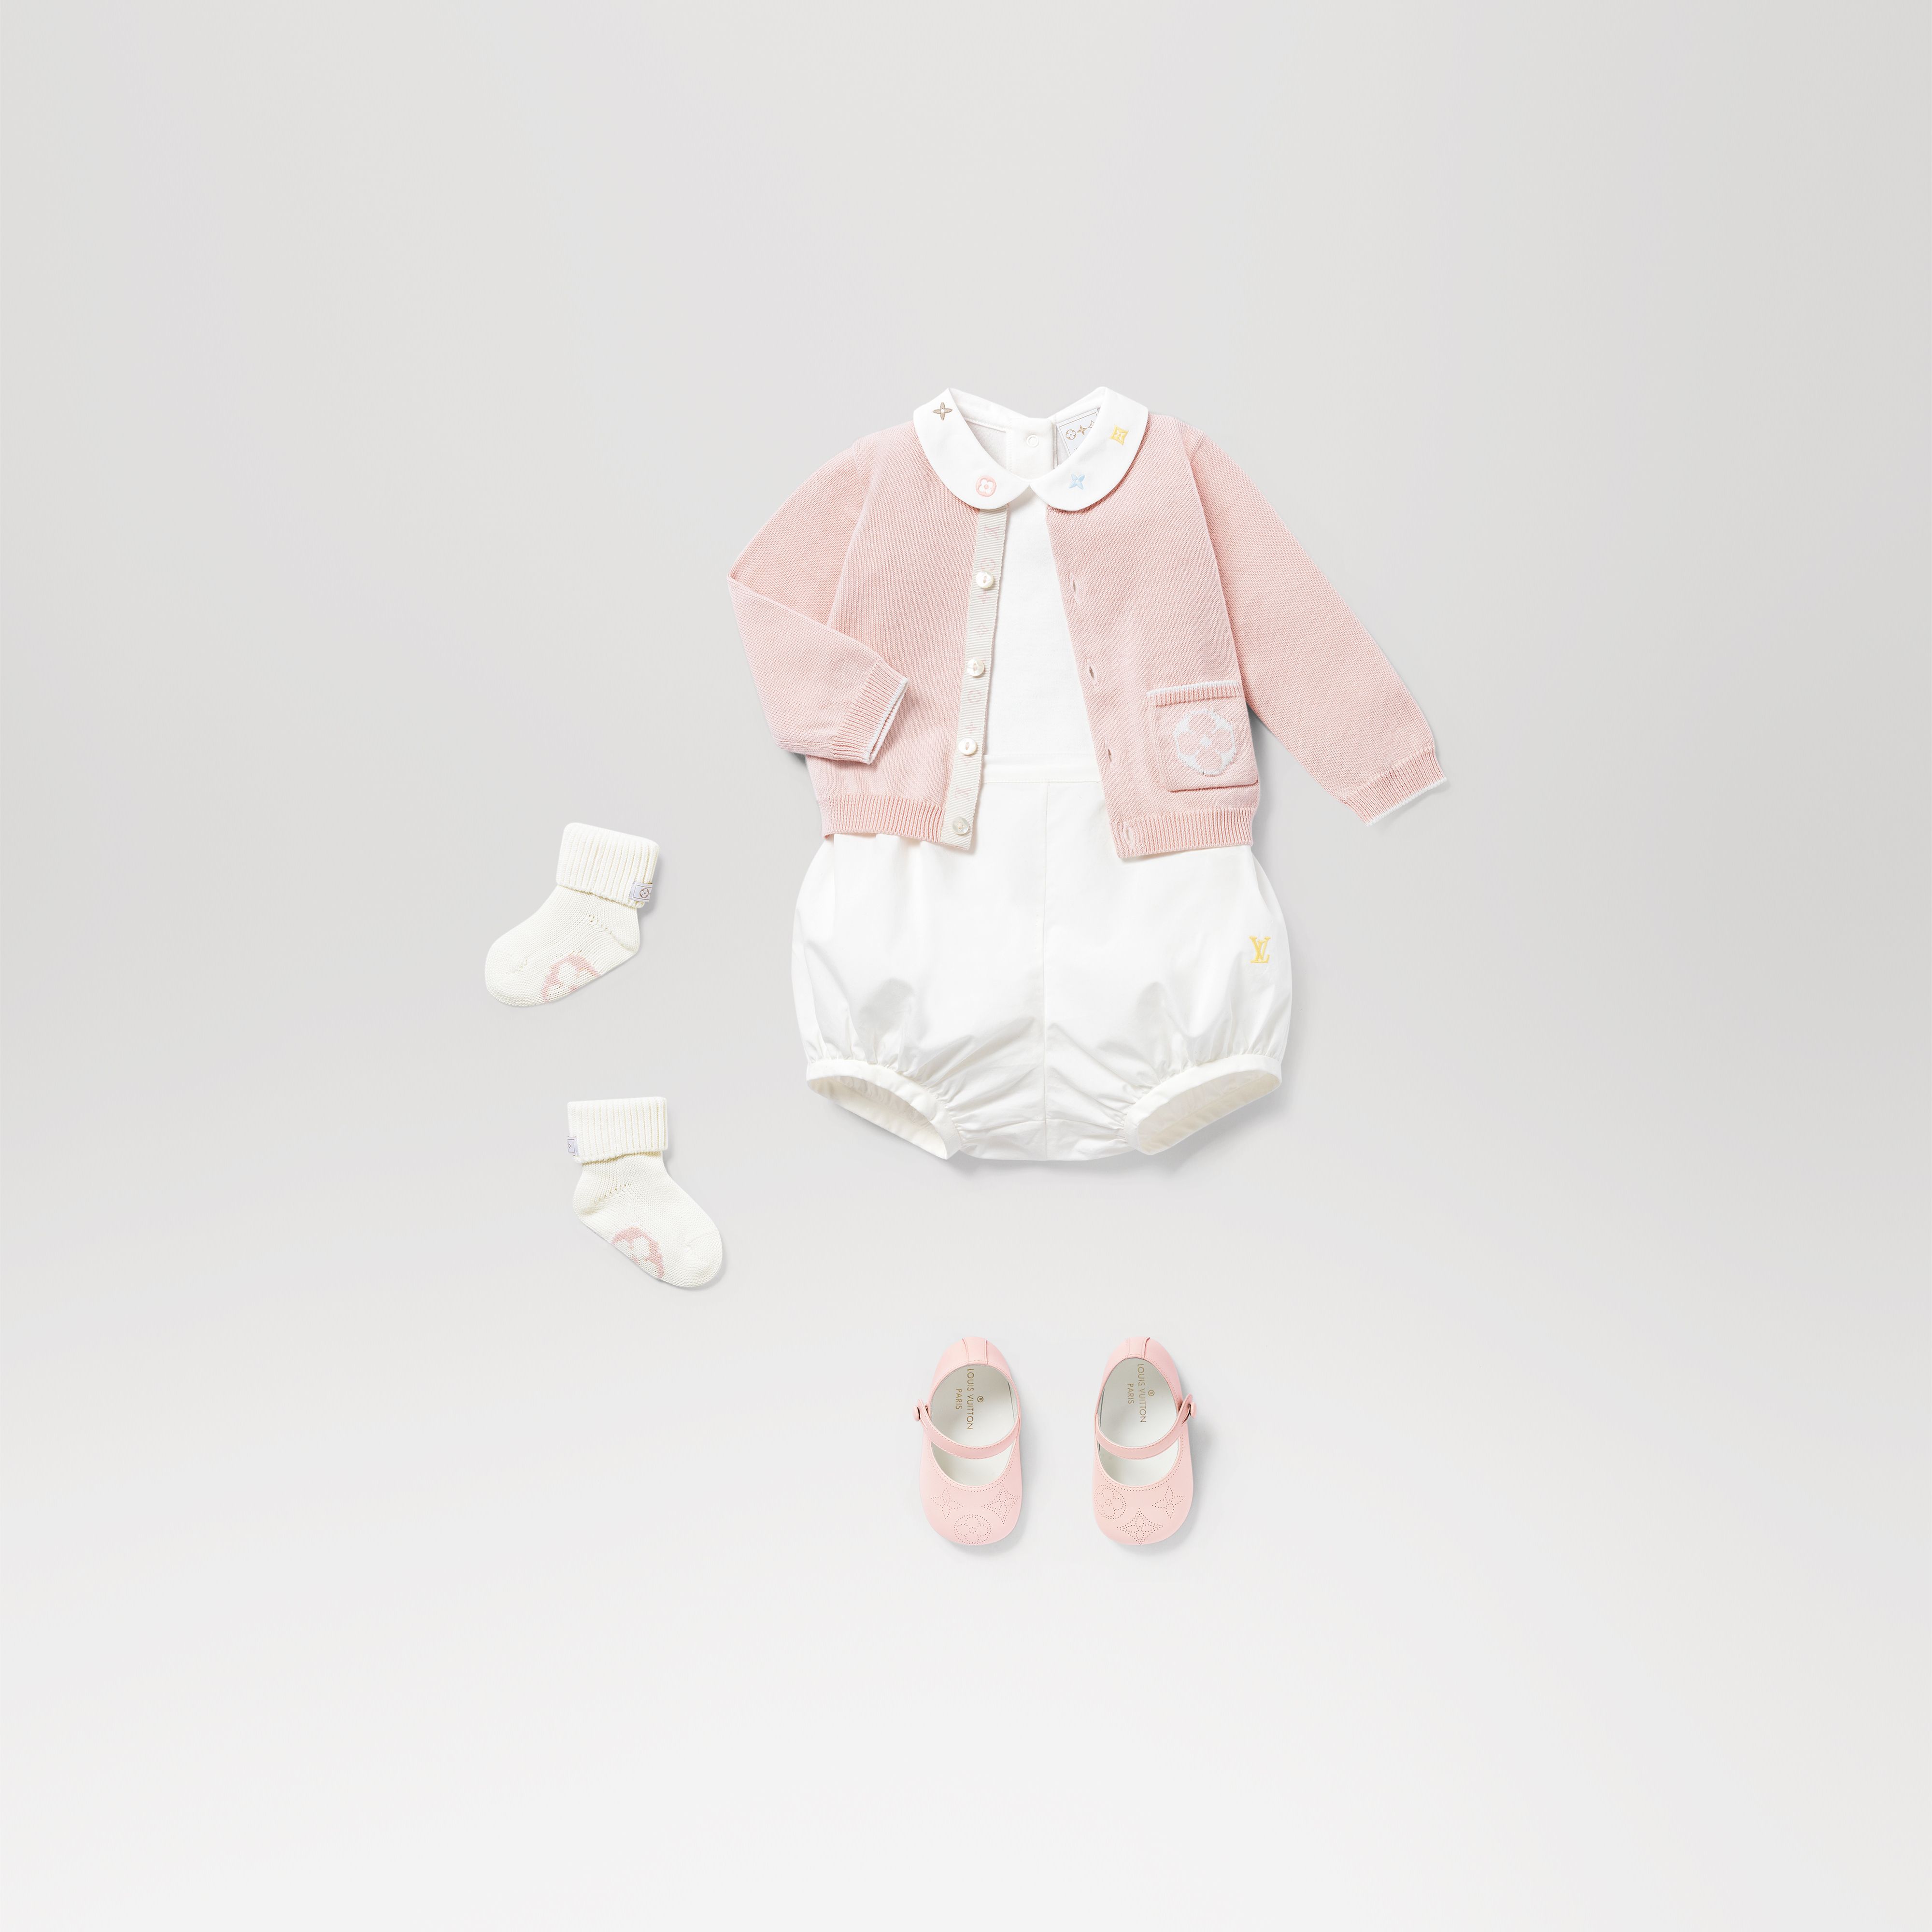 vuitton baby girl clothes